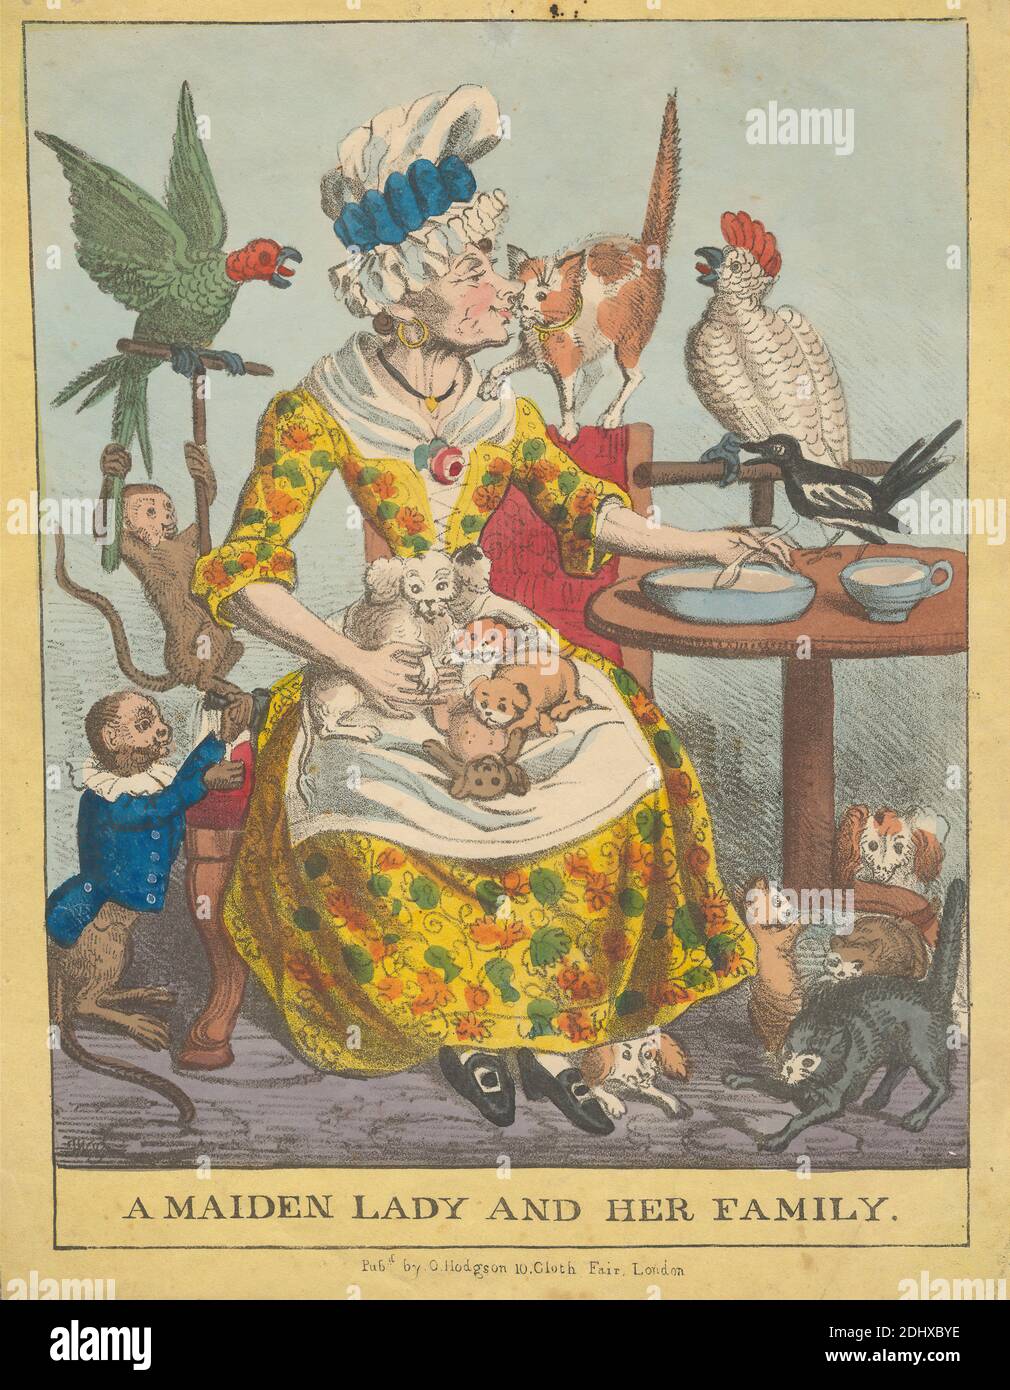 A Maiden Lady and Her Family, Stampa di artista sconosciuto, (G., T. W.), pubblicato da Orlando Hodgson, attivo 1820–1840, inglese, tra il 1820 e il 1840, litografia con acquerello su carta wove beige di spessore moderato, leggermente testurizzata, foglio: 11 1/2 x 8 7/8 pollici (29.2 x 22.5 cm) e immagine: 9 7/16 x 7 11/16 pollici (23.9 x 19.5 cm), arte animale, grembiule, uccelli, berretto, caricature, gatti, cani (animali), orecchini, famiglia, genere soggetto, umorismo, baciare, nubile, latte, scimmie (animali), vecchio, pappagalli, cuccioli, satira, piattino, cucchiaio, tè, teacup, donna Foto Stock